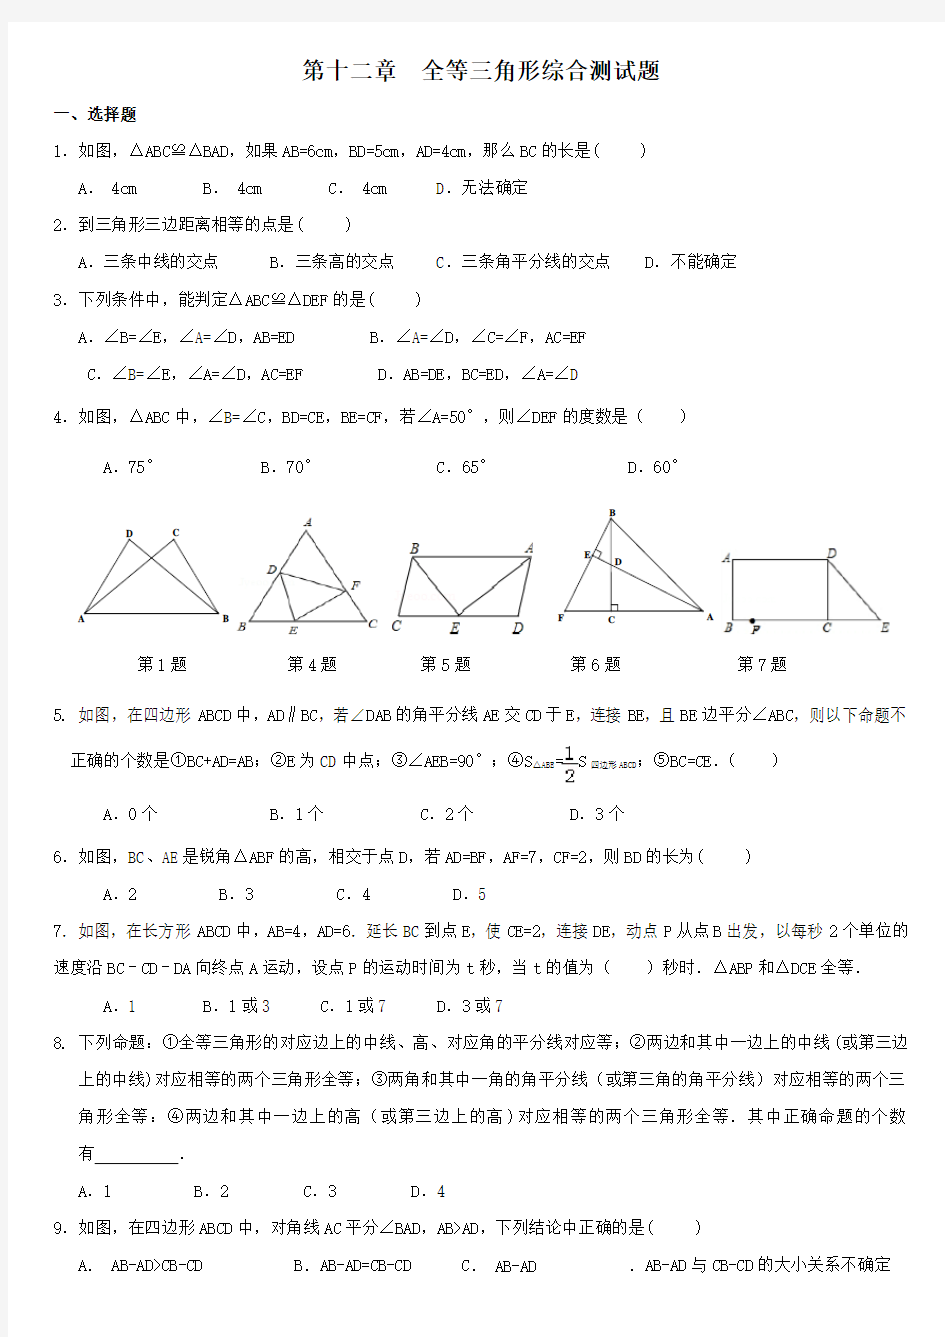 全等三角形综合测试题(较难)